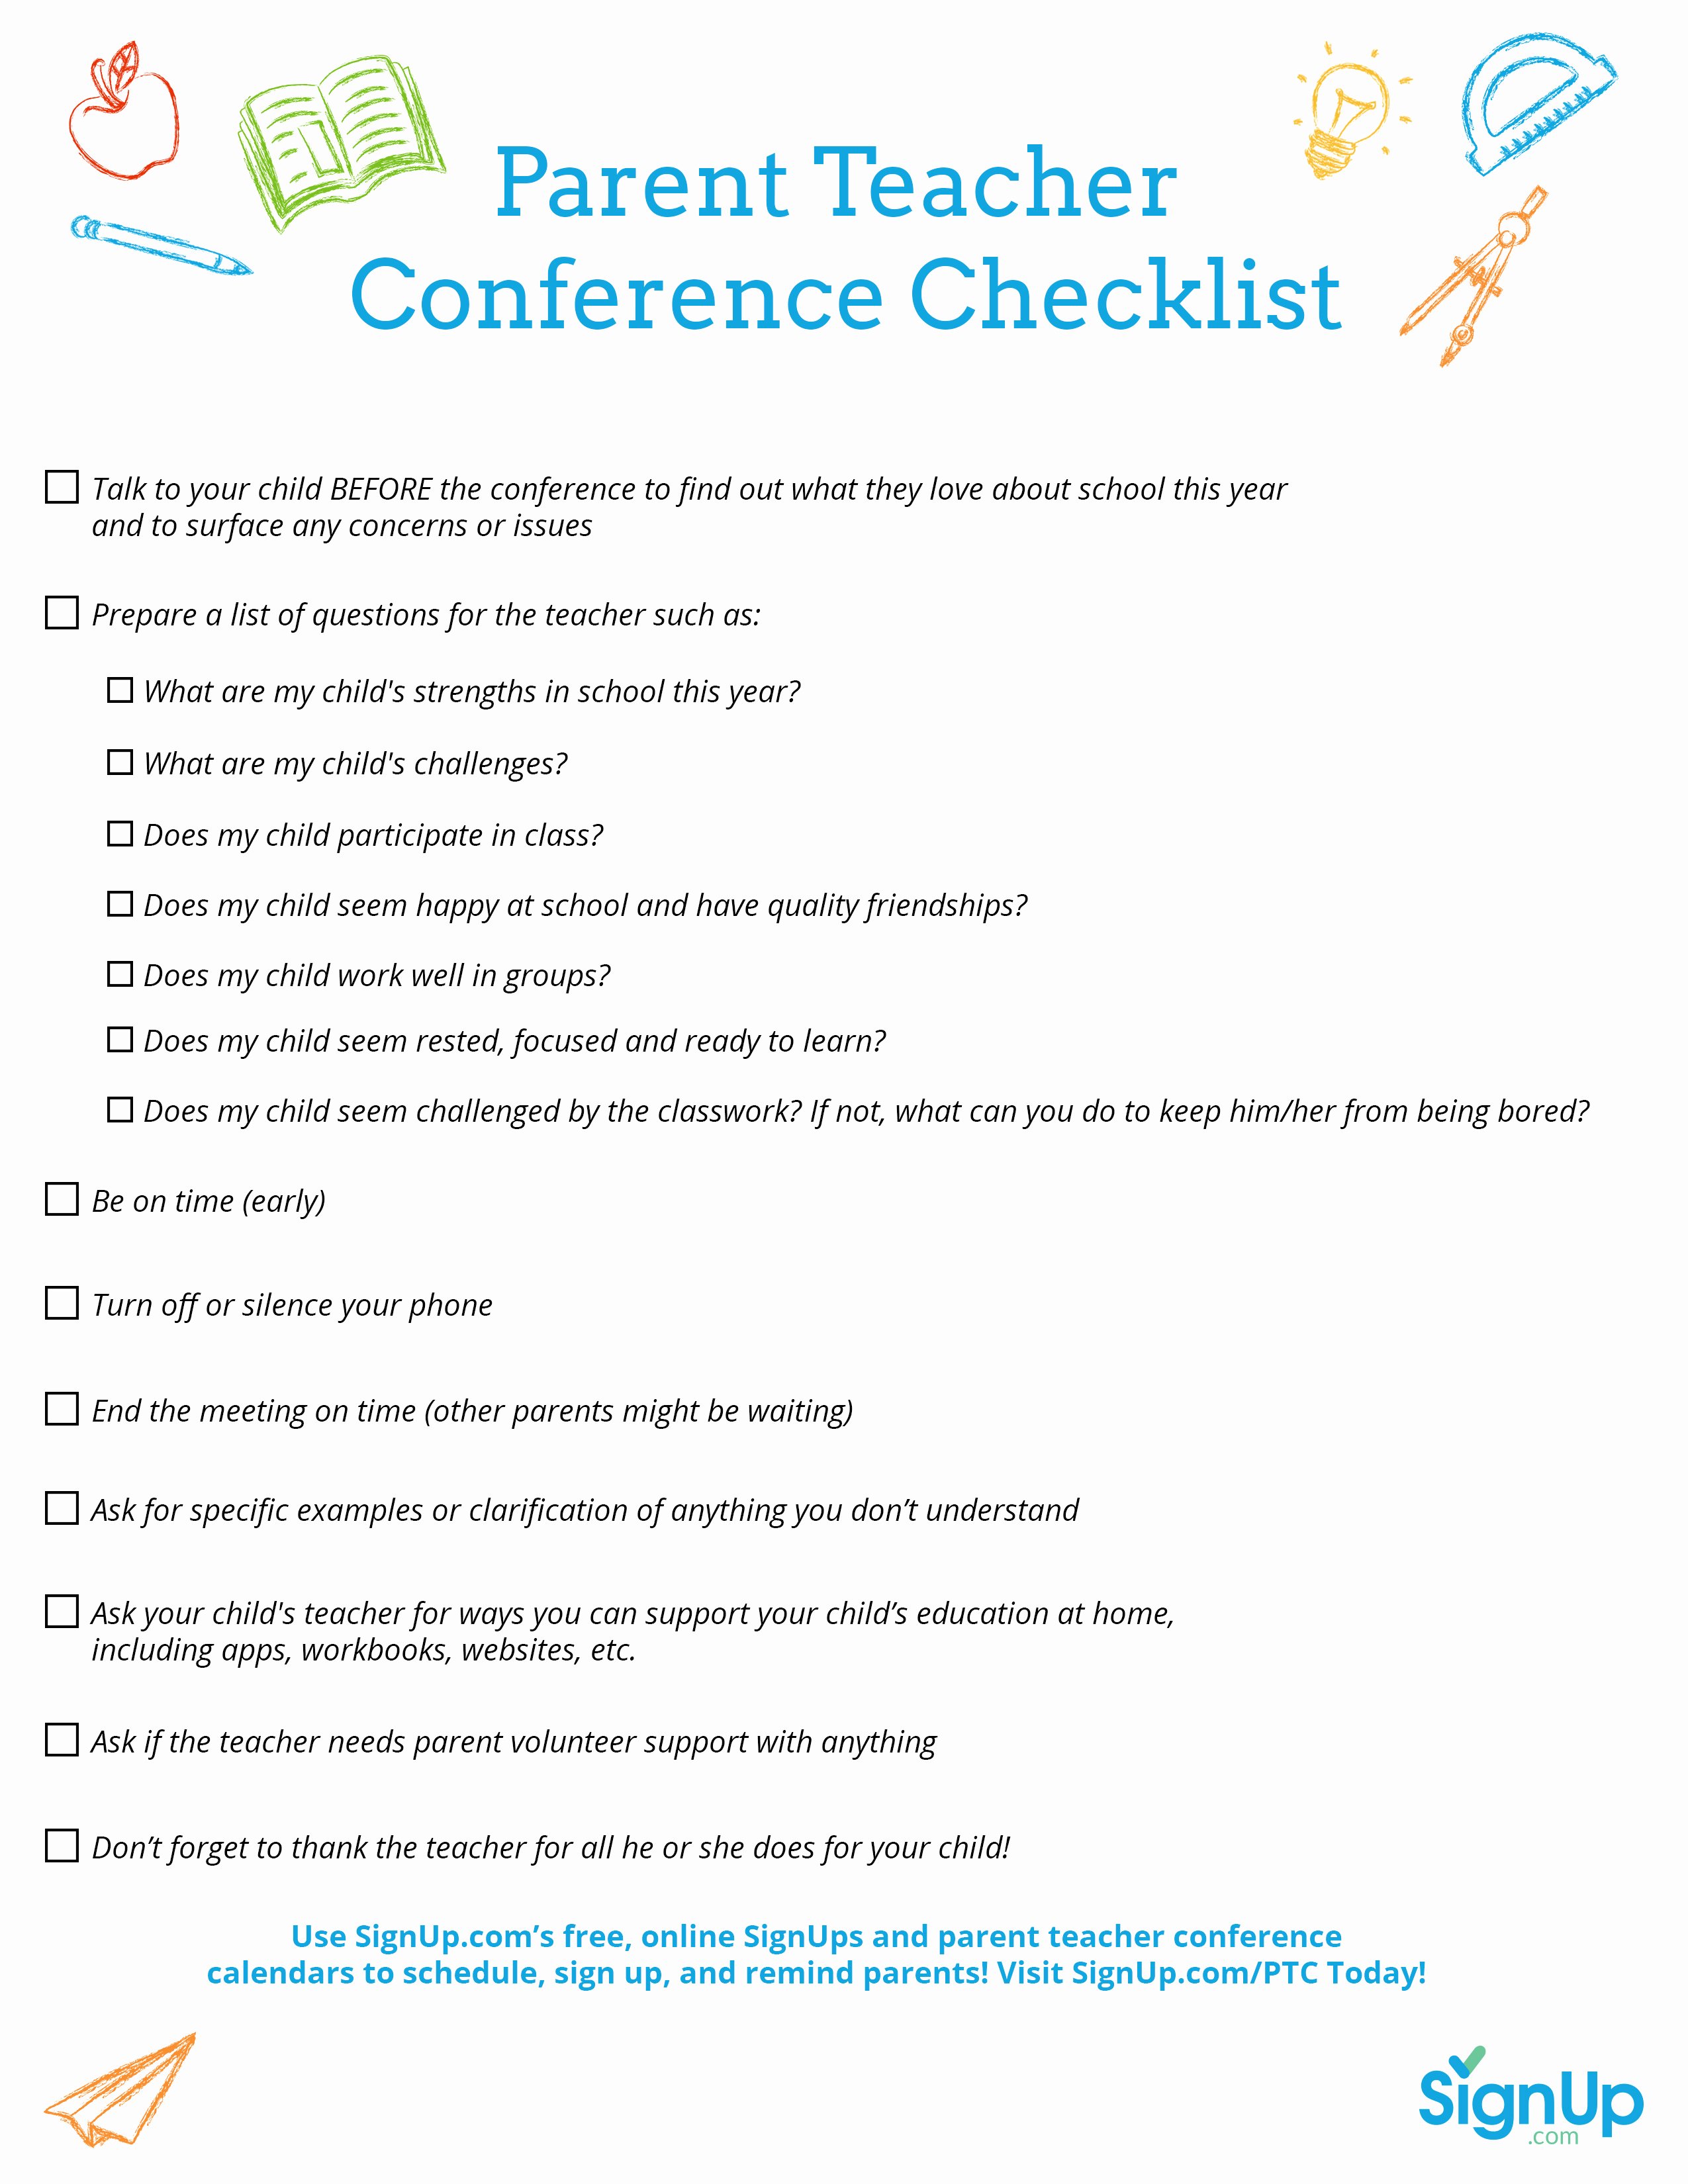 Parent Teacher Conference form Pdf Luxury Printable Checklist for Parent Teacher Conferences